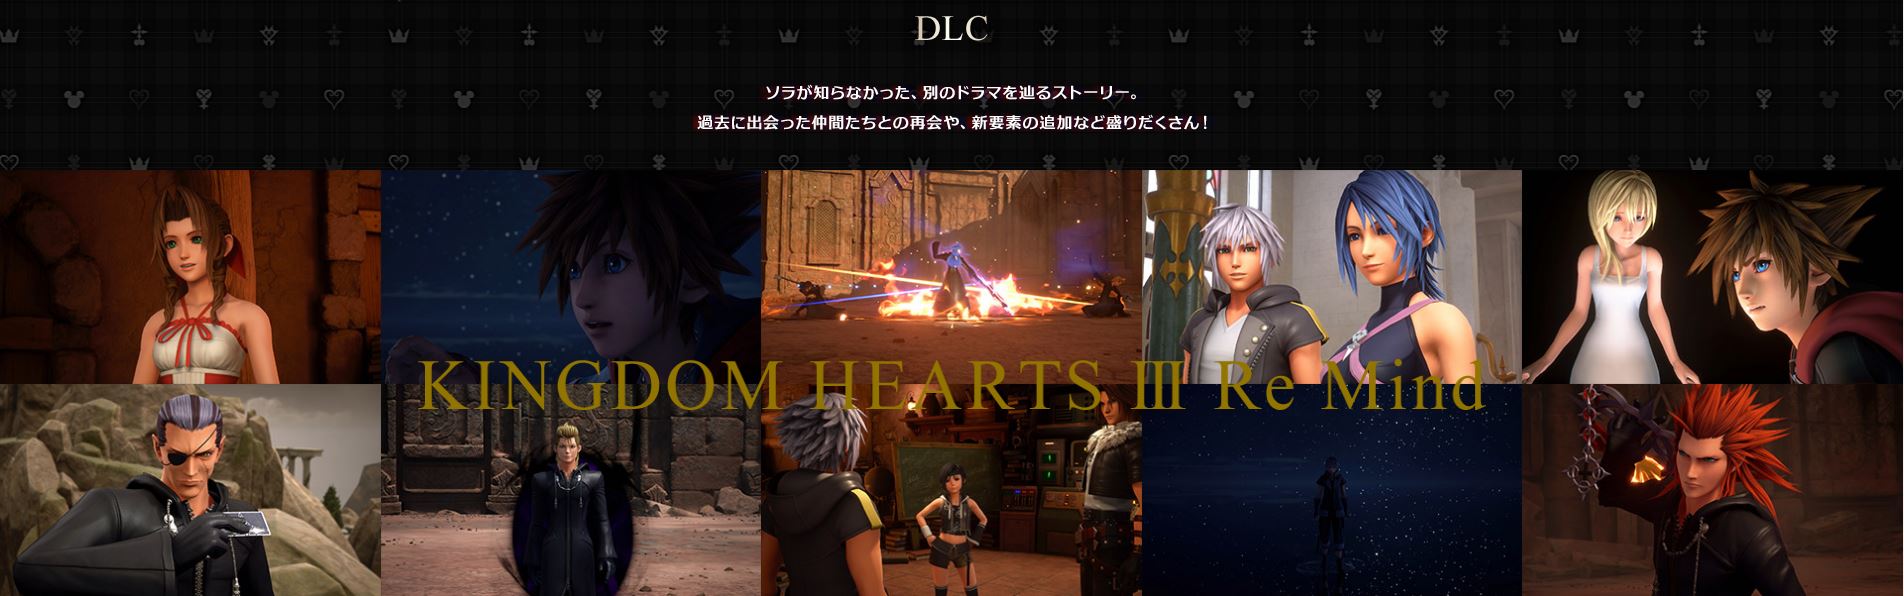 《王国之心3》DLC拍照形式展现 可设定战役前提